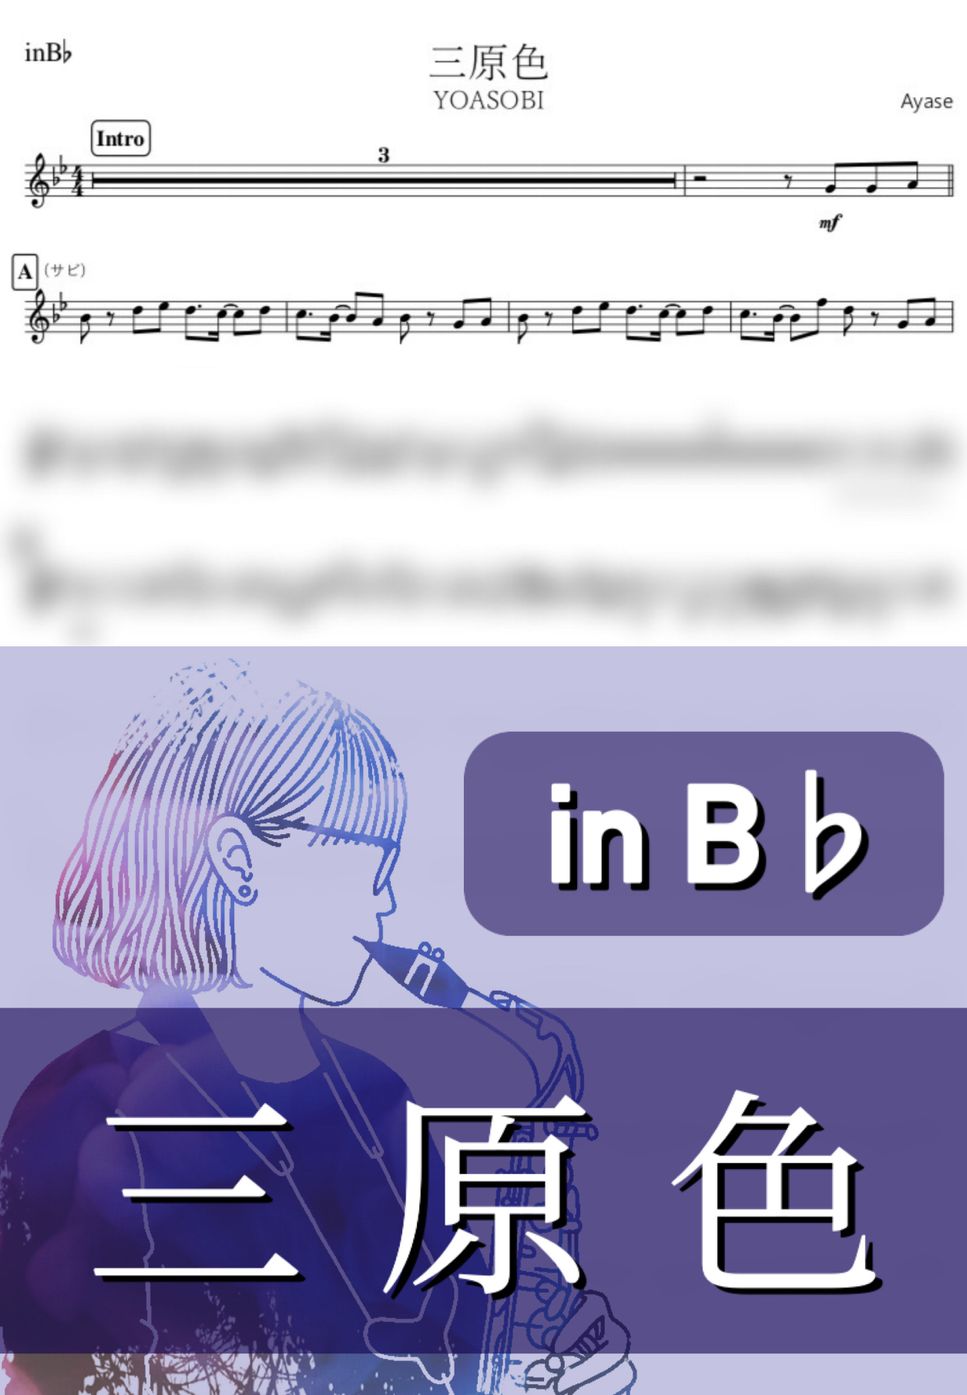 YOASOBI - 三原色 (B♭) by kanamusic